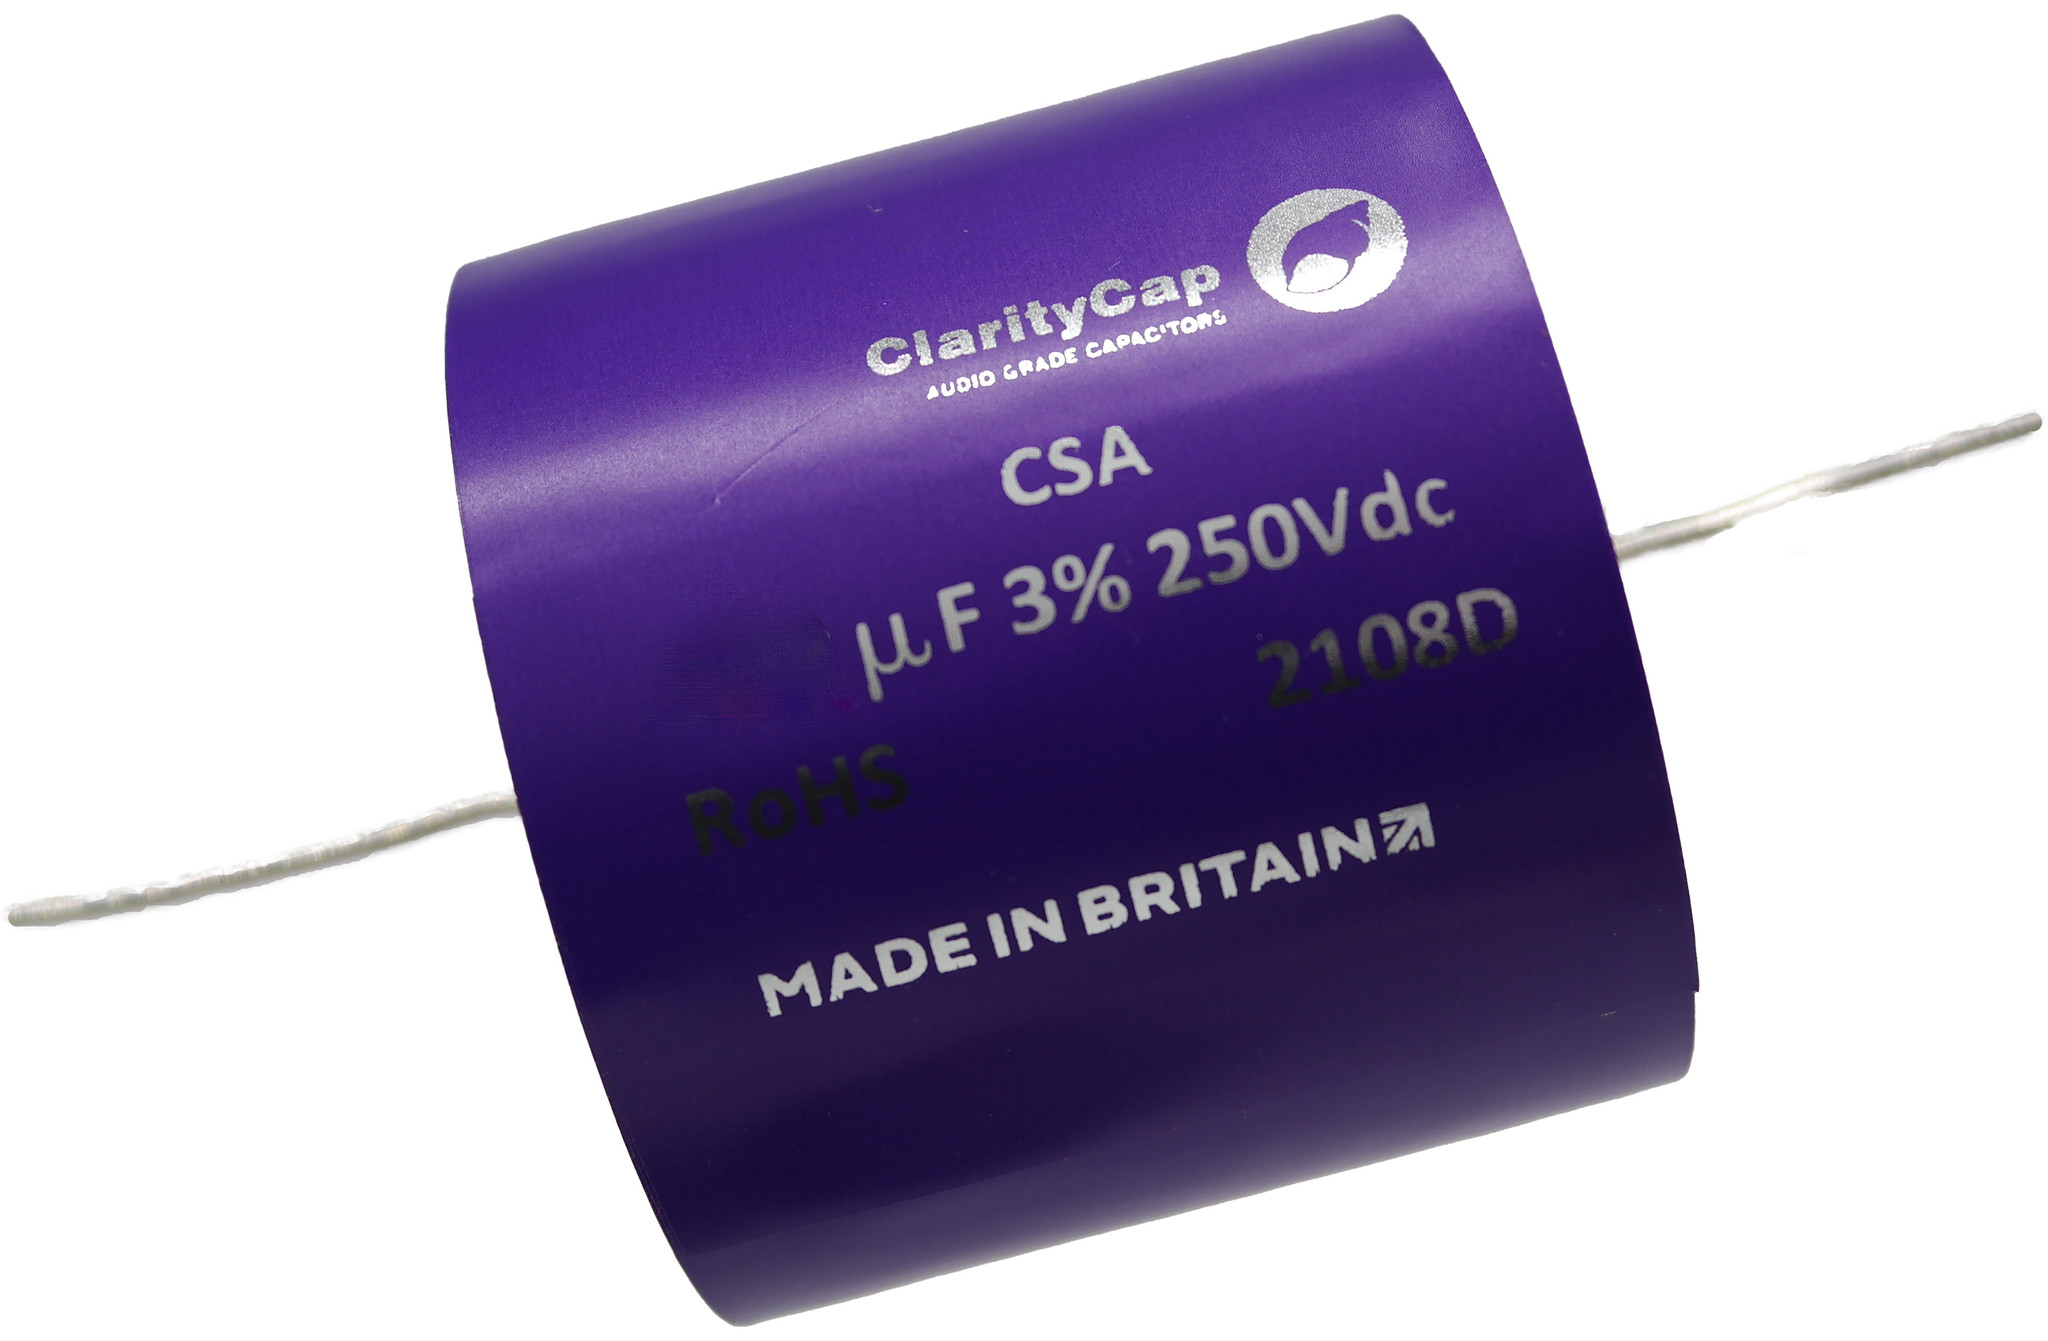 Condensatoare - Condensator film ClarityCap CSA39uH250Vdc| 39 µF | 3% | 250 V, audioclub.ro